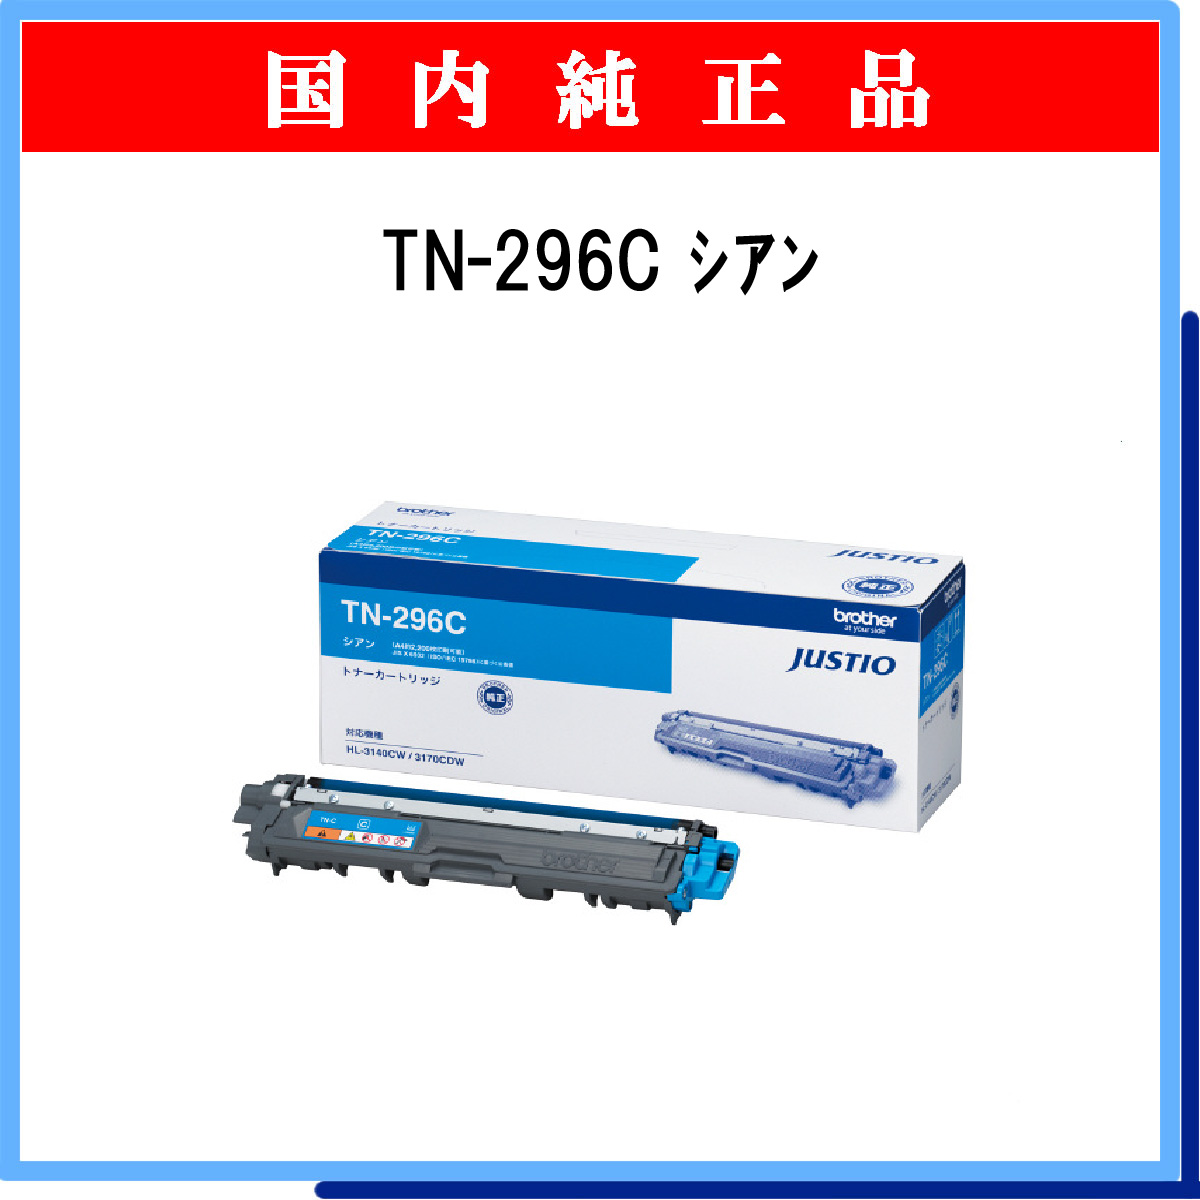 TN-296C 純正